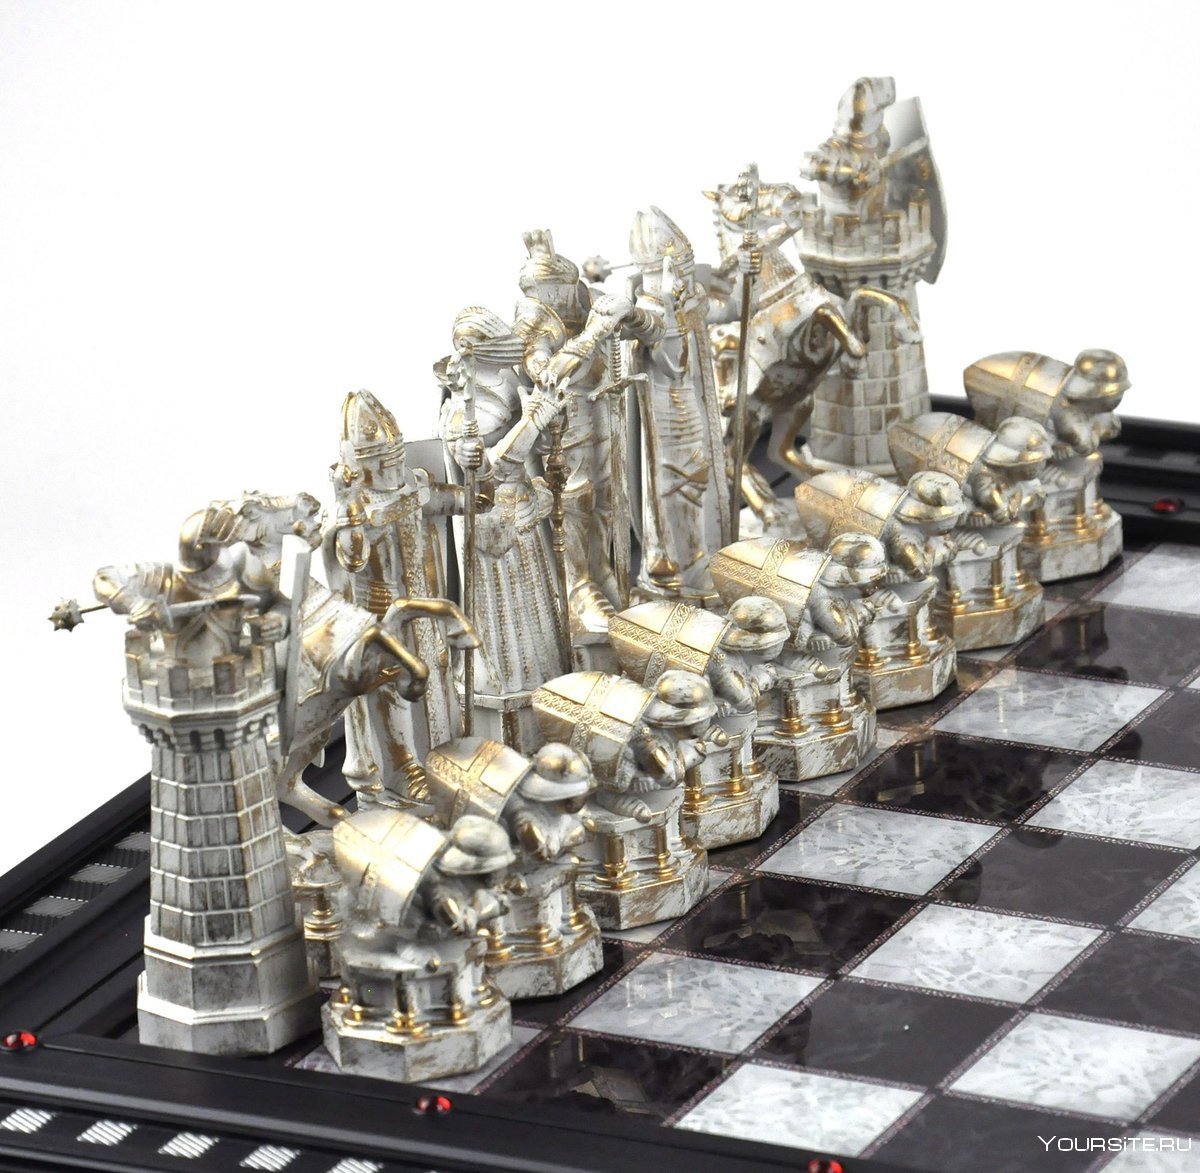 Изображение: Утонченная и прекрасная фигура шахматной доски, символизирующая Гермиону и ее интеллектуальные способности.